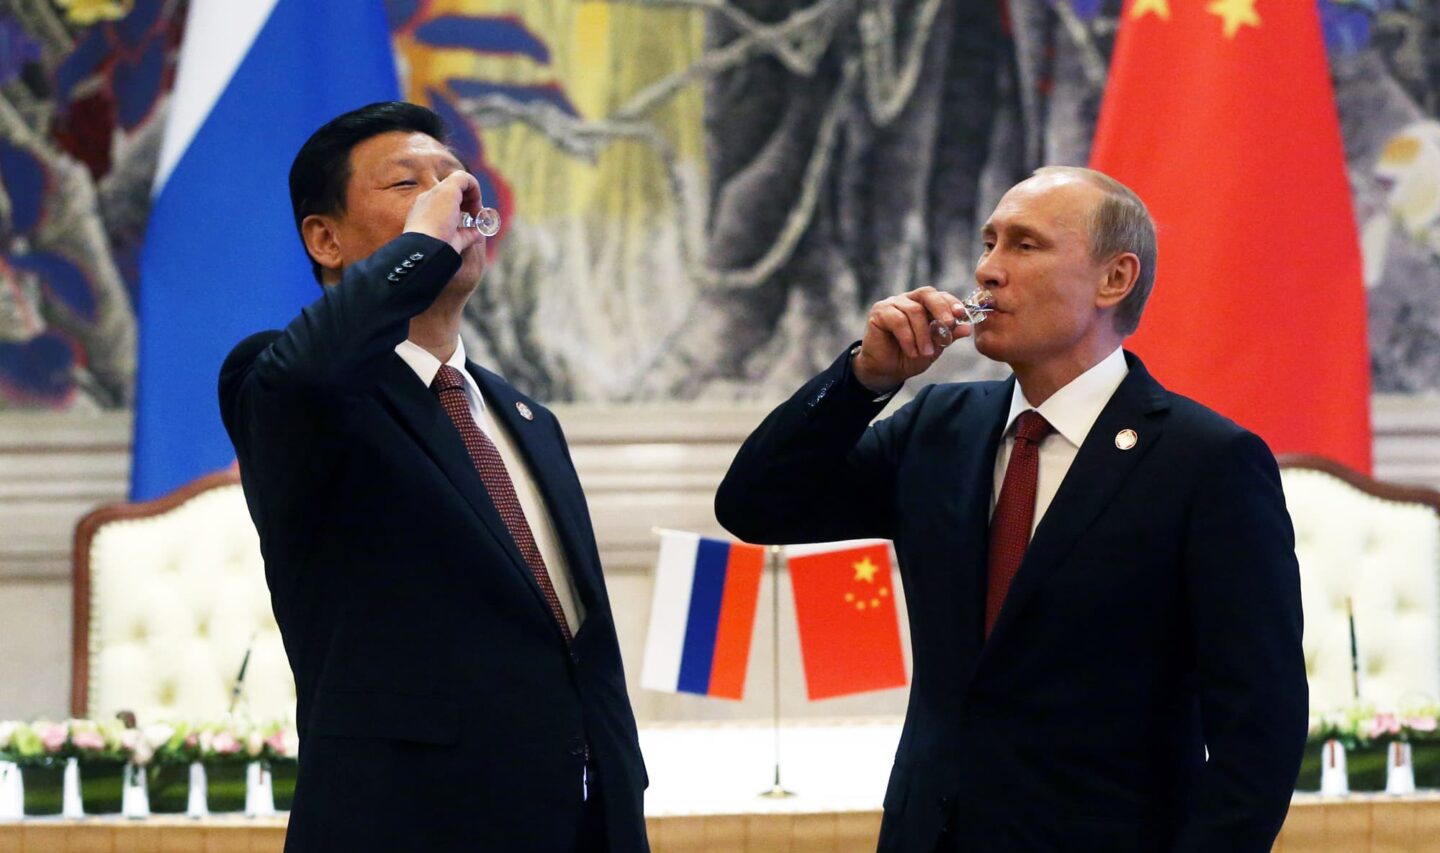 Chiny popierają rosyjską inwazję. Geopolityczny sojusz globalnych rewizjonistów